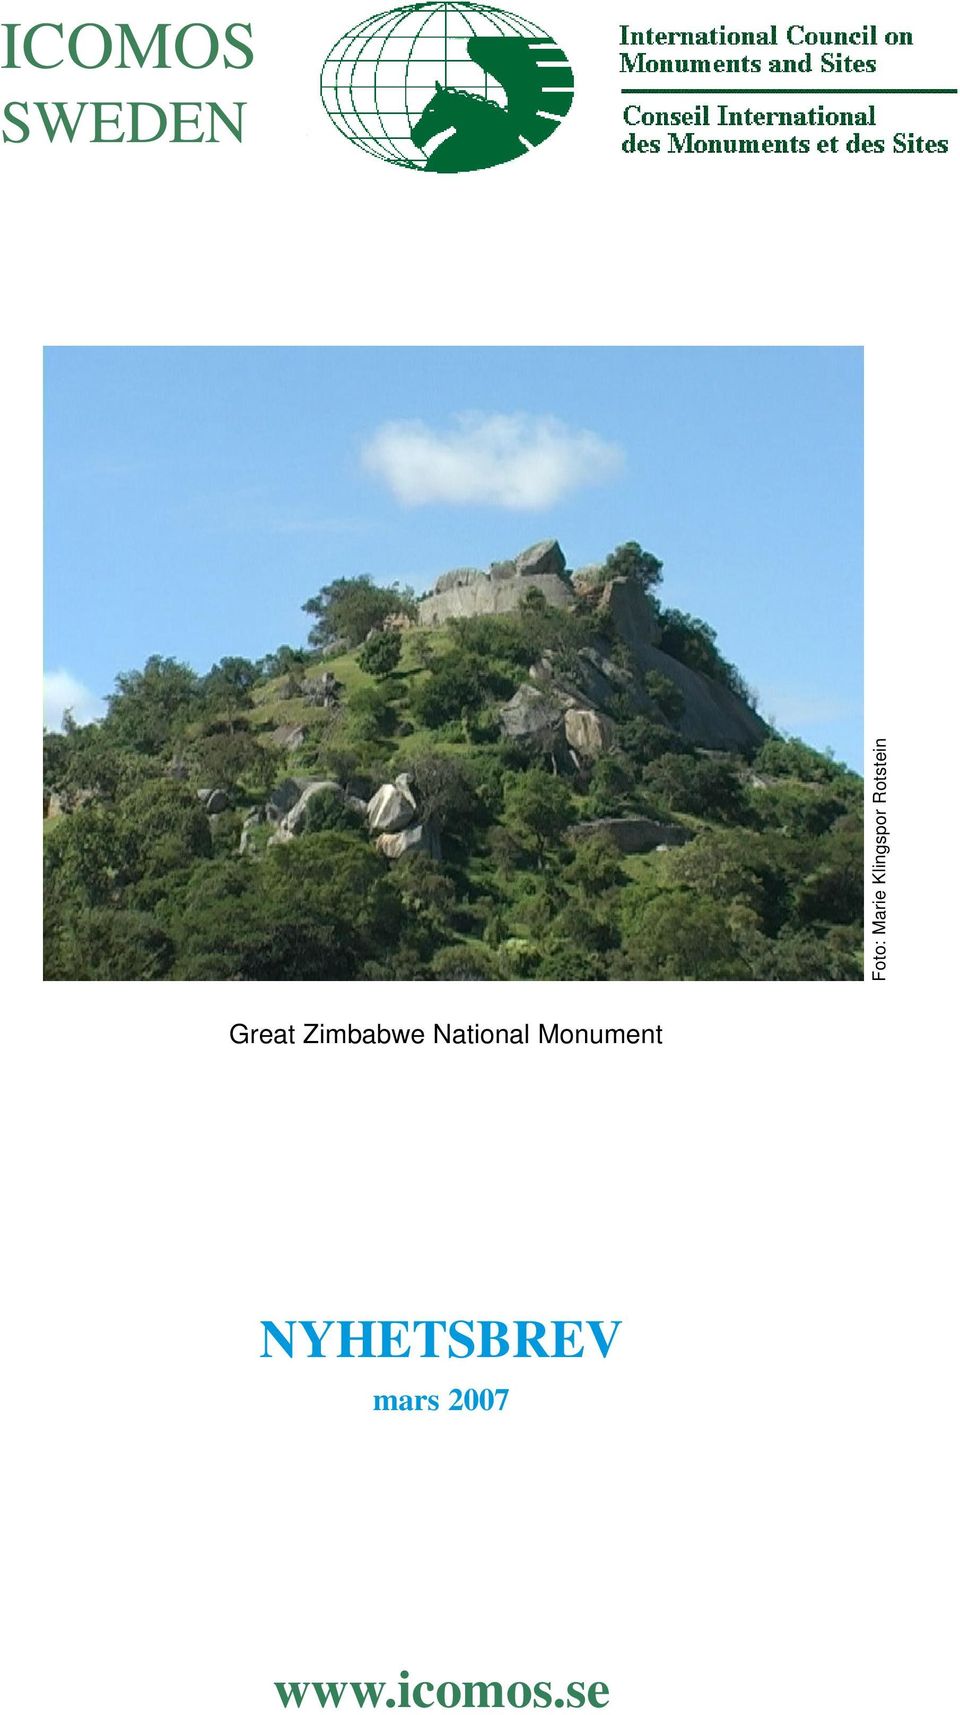 Zimbabwe National Monument